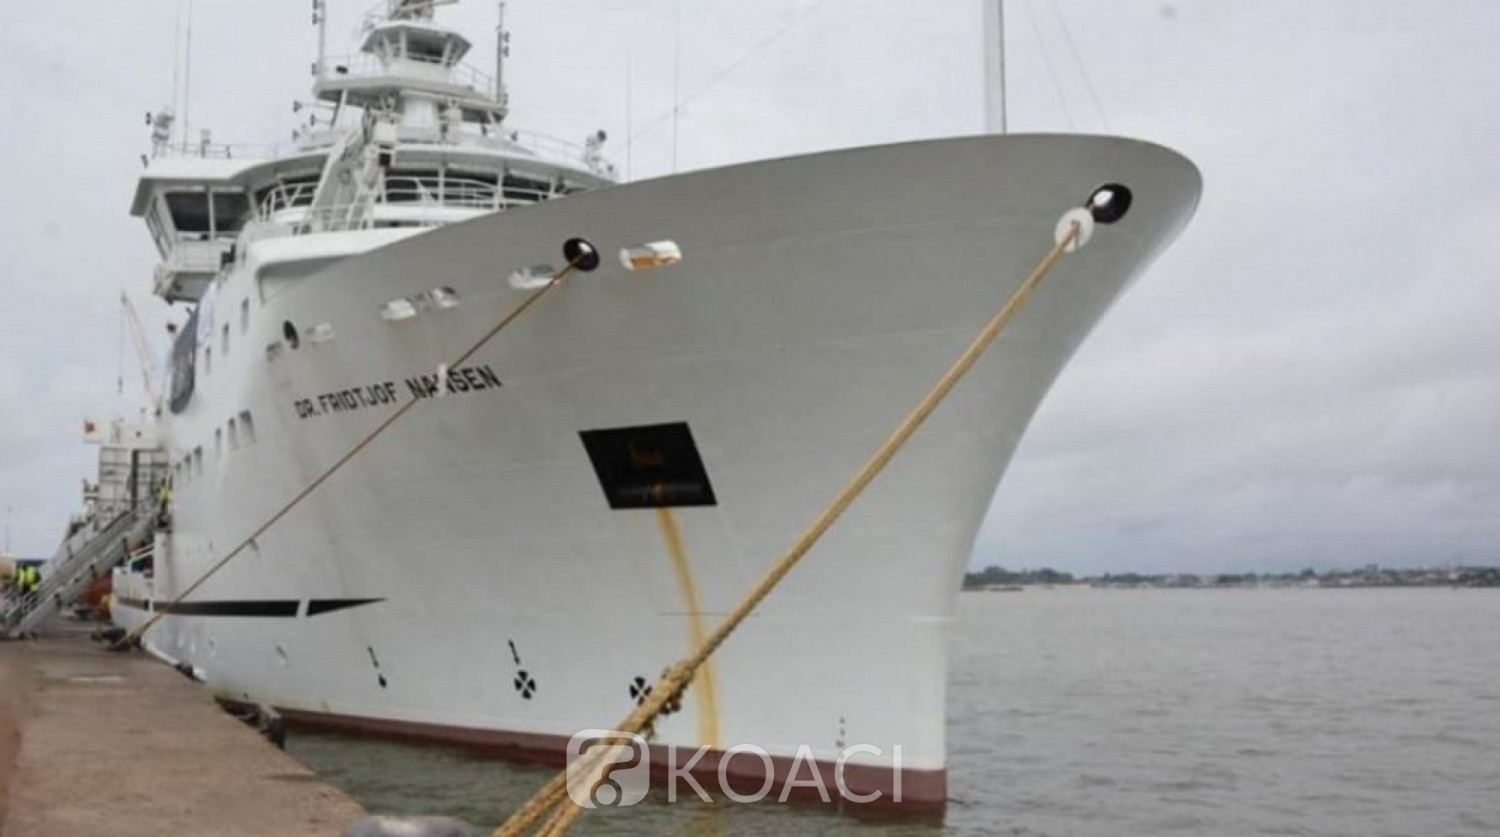 Côte d'Ivoire: Un navire d'étude en escale au port d'Abidjan pour la recherche océanographique